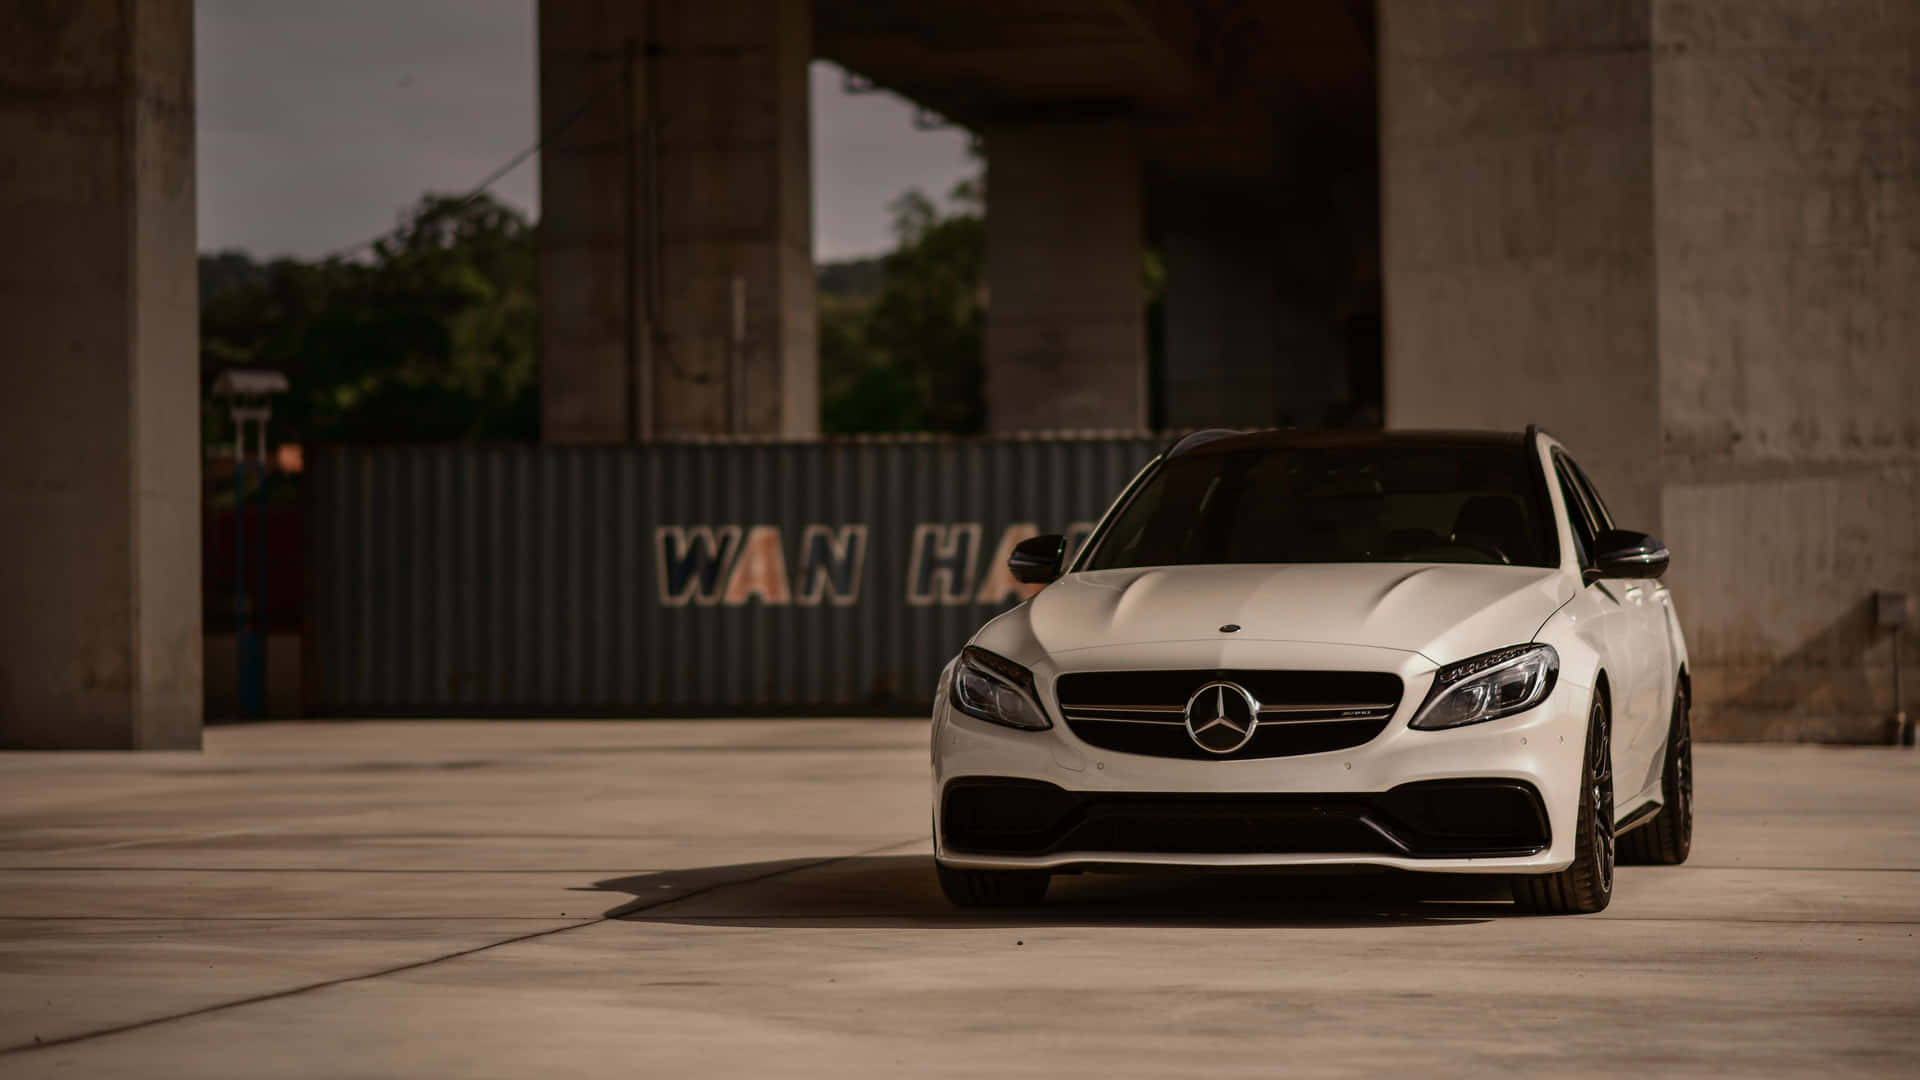 Captivating 4K Mercedes Wallpaper